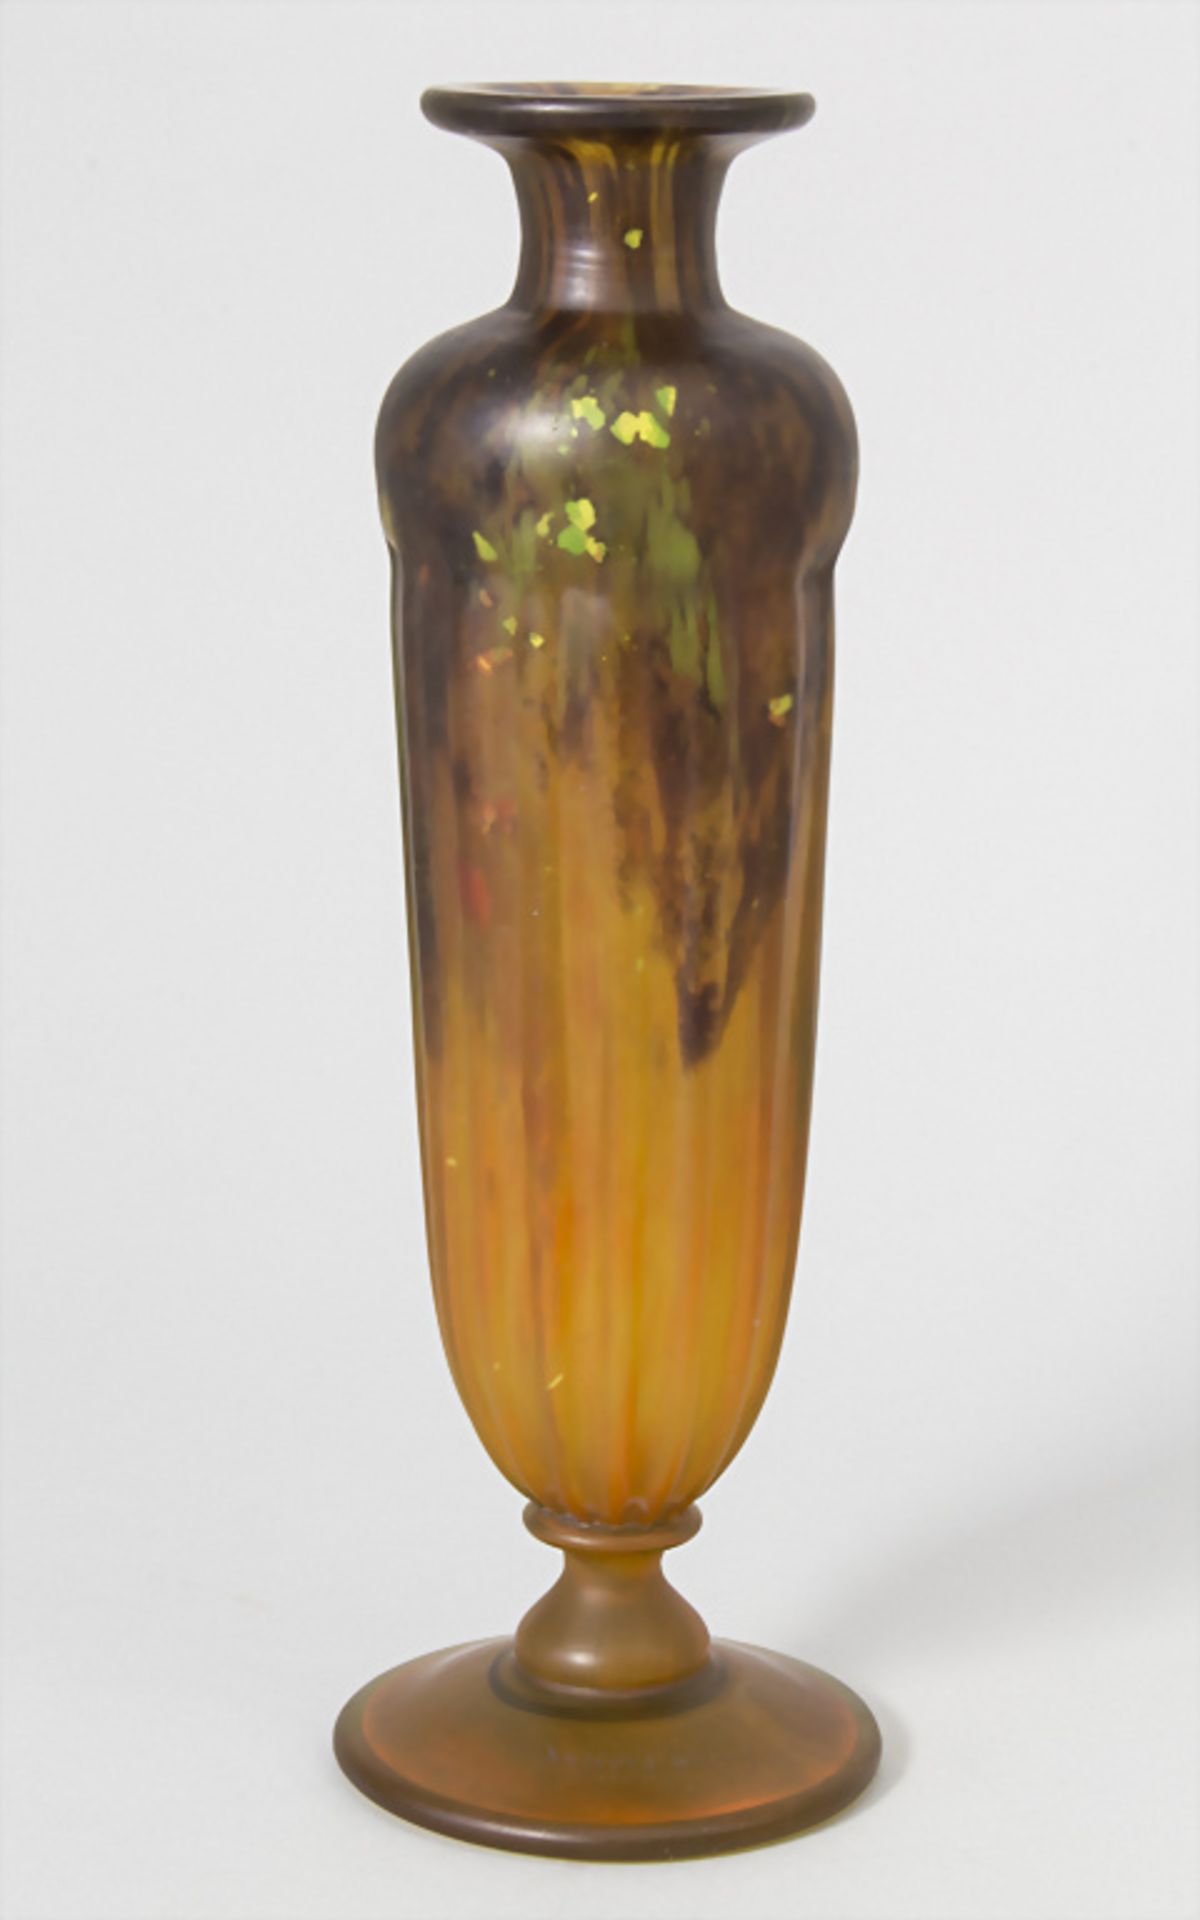 Jugendstil Vase / Art Nouveau glass vase, Daum Frères, Ecole de Nancy, Frankreich, um 1900 - Bild 2 aus 7